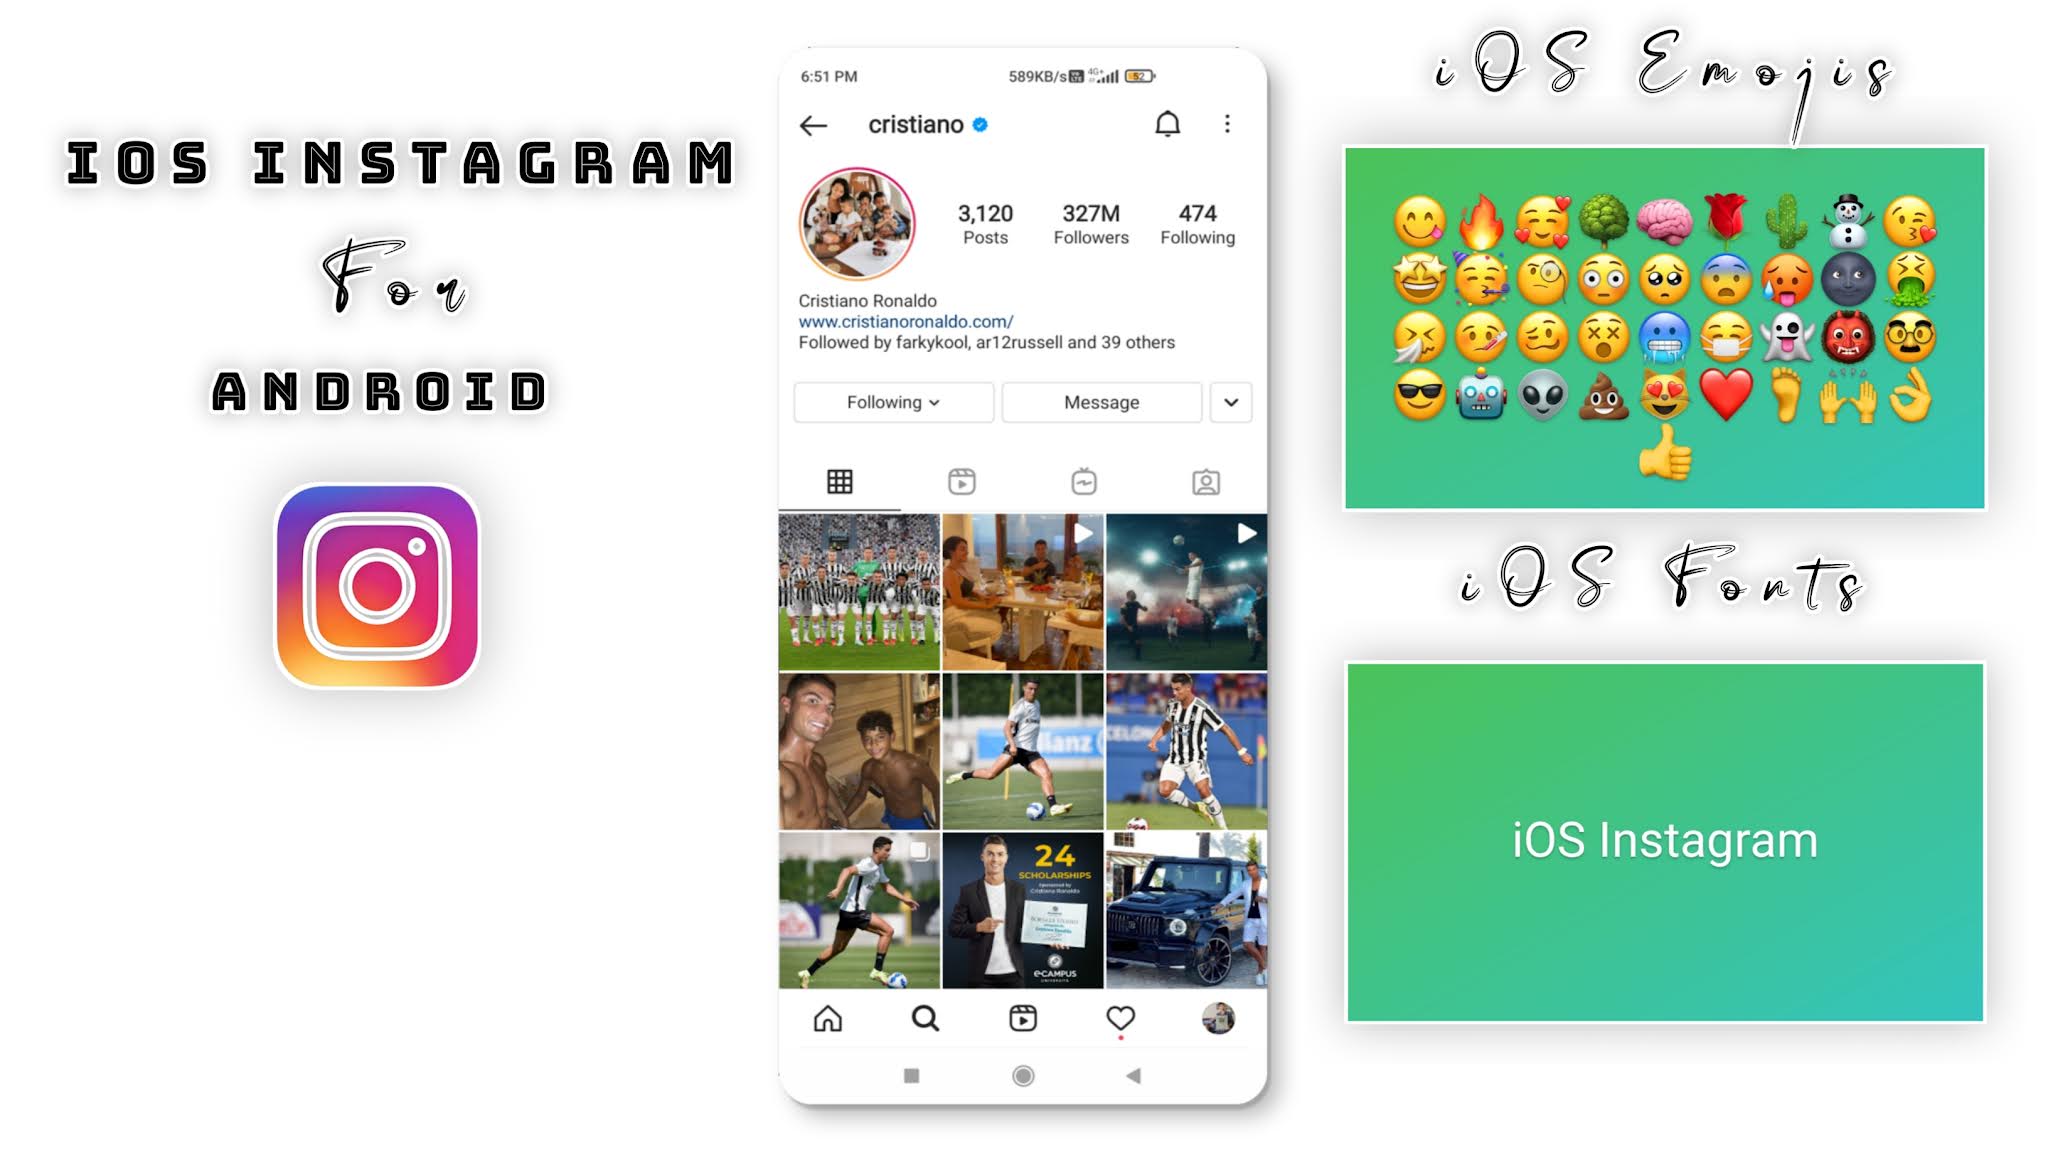 Thật tiếc nếu bạn không thể truy cập vào trang Instagram chỉ vì điện thoại Android của mình. Nhưng không phải lo lắng nữa vì Install iOS Instagram Android giúp bạn giải quyết tình hình đó. Với tính năng đa dạng và giao diện thân thiện, bạn sẽ có trải nghiệm Instagram tuyệt vời ngay trên điện thoại của mình.